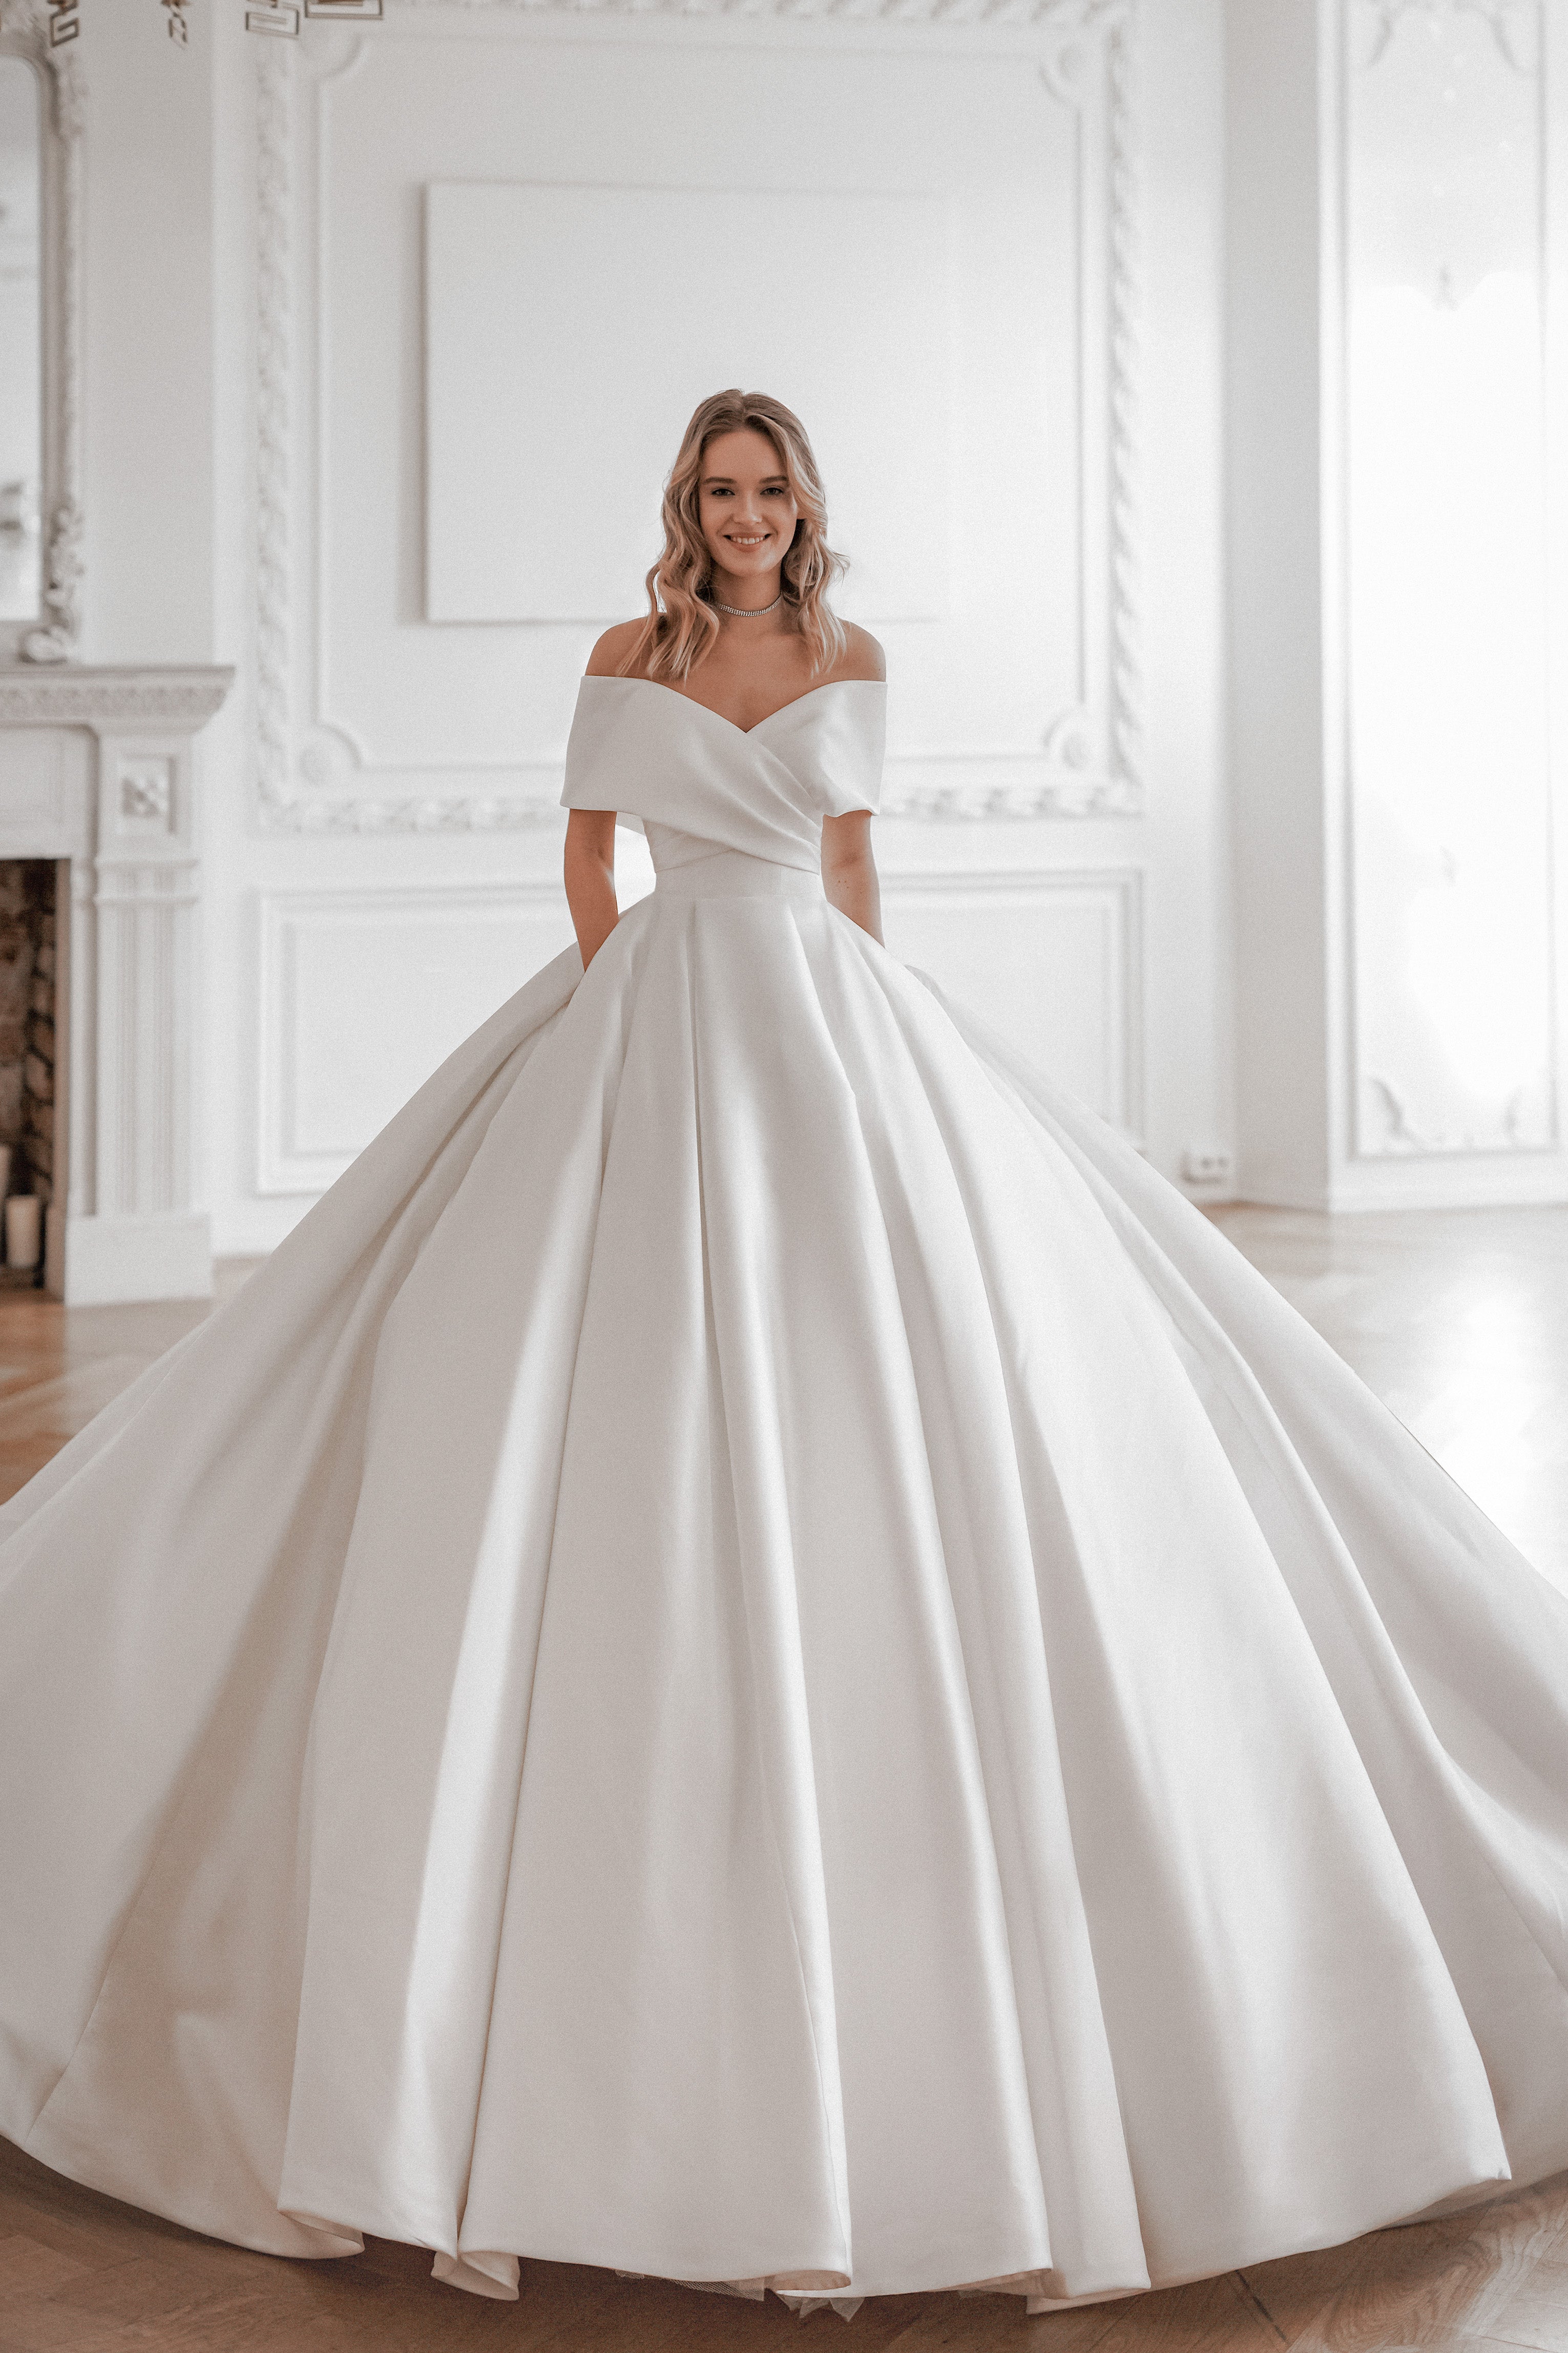 White satin wedding dress